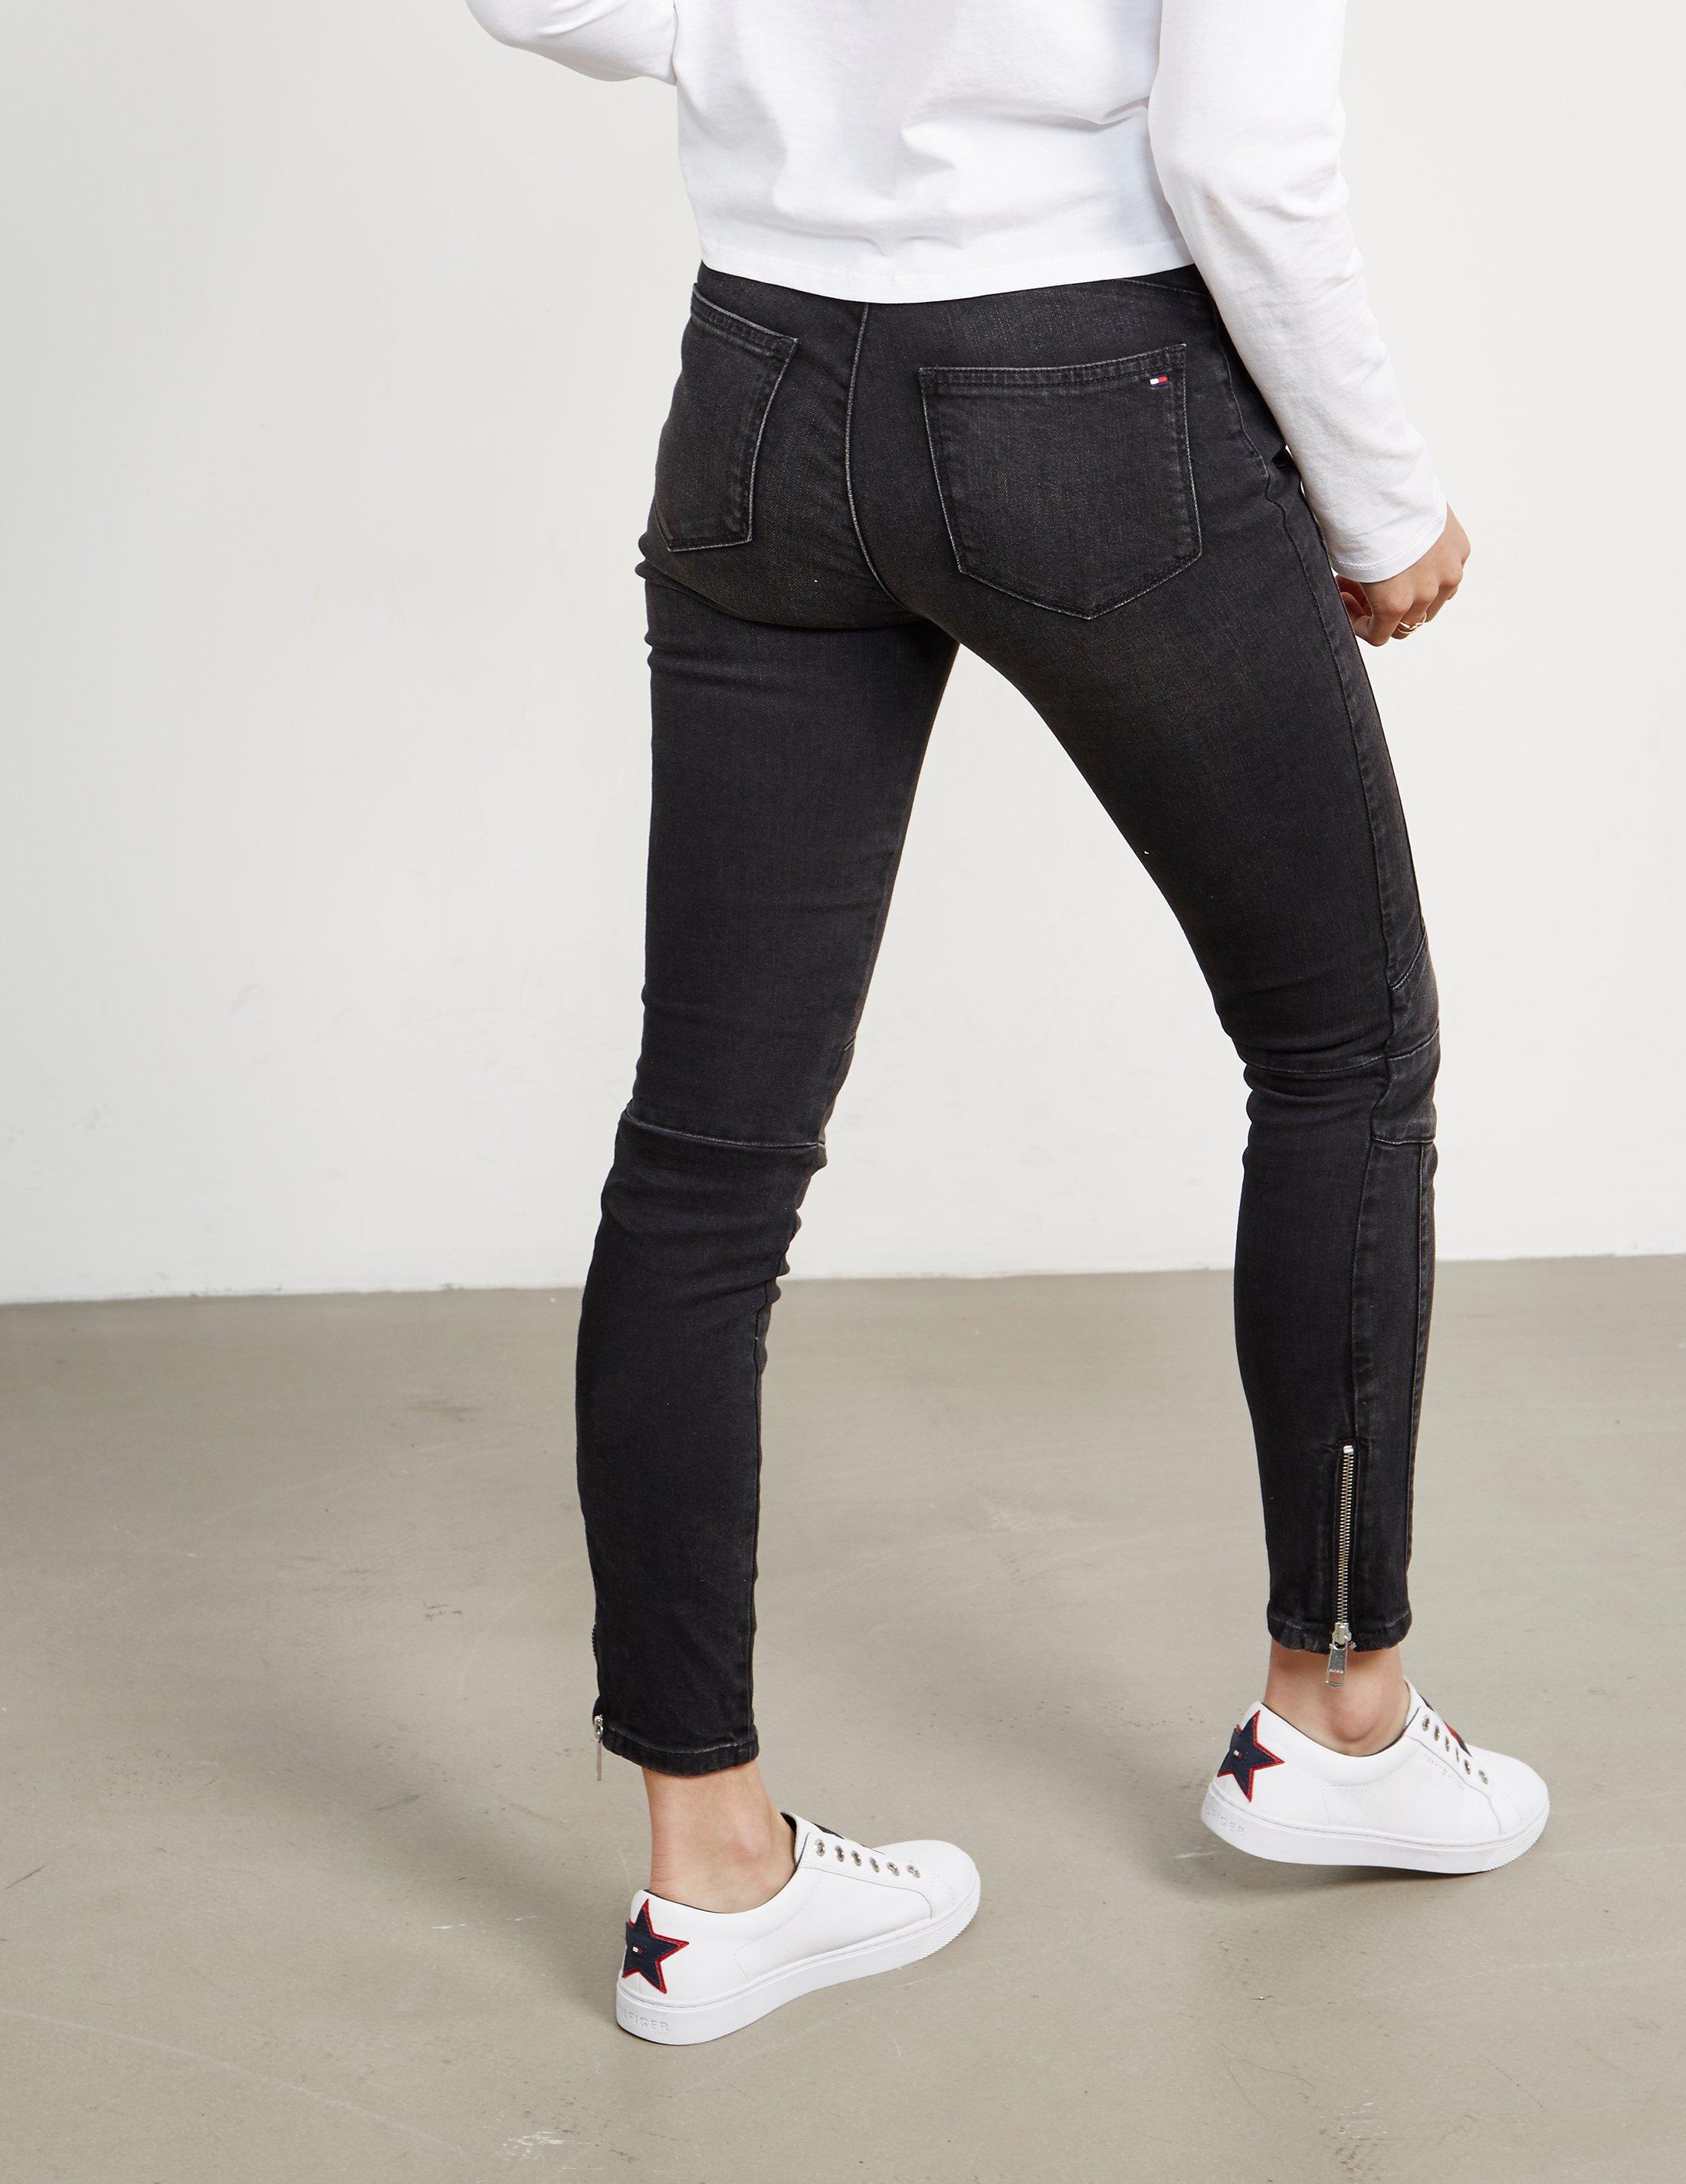 Tommy Hilfiger Venice Jeans Slim Fit new Zealand, SAVE 43% - mpgc.net